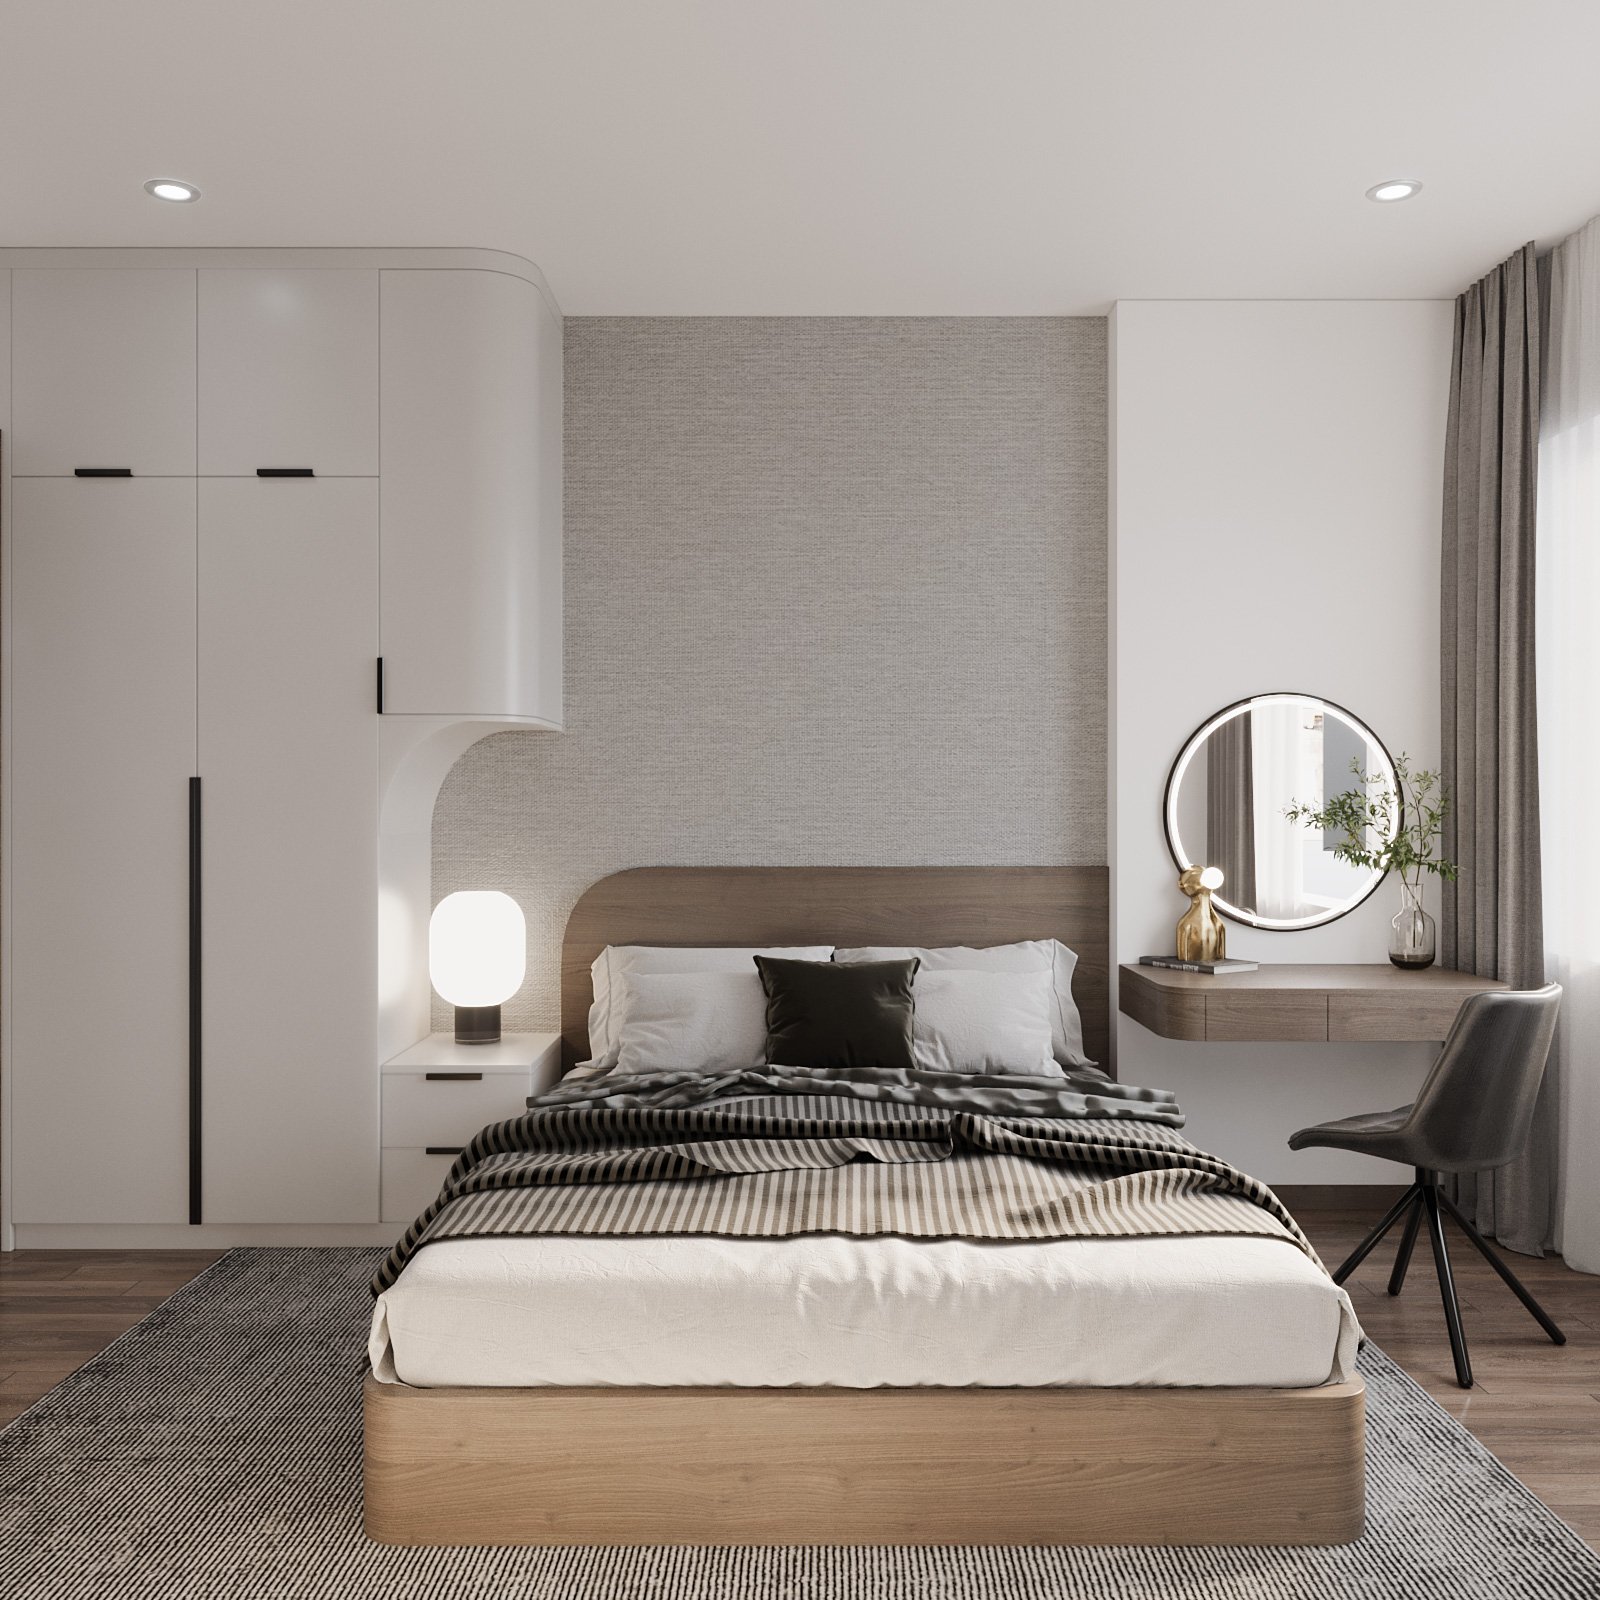 Không gian phòng ngủ master trong căn hộ 75m2 khá rộng rãi, sử dụng nội thất sang trọng tối giản với ánh sáng tự nhiên ngập tràn.